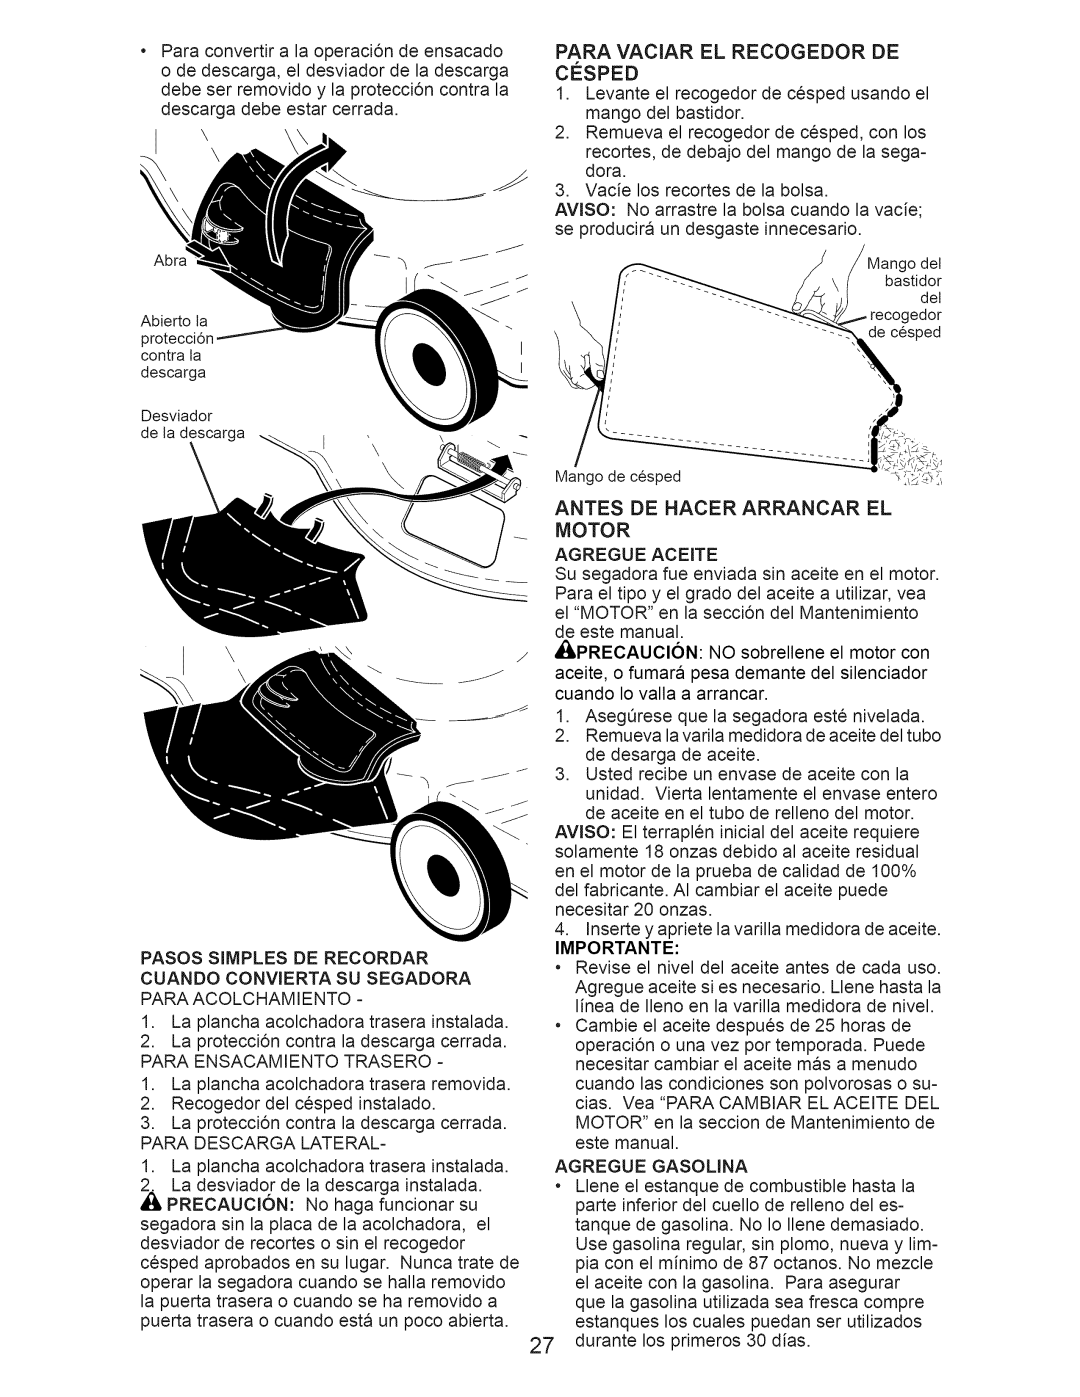 Craftsman 917.376232 manual Paraconvertira la operaci6ndeensacado, Antes De Hacer Arrancar El Motor 